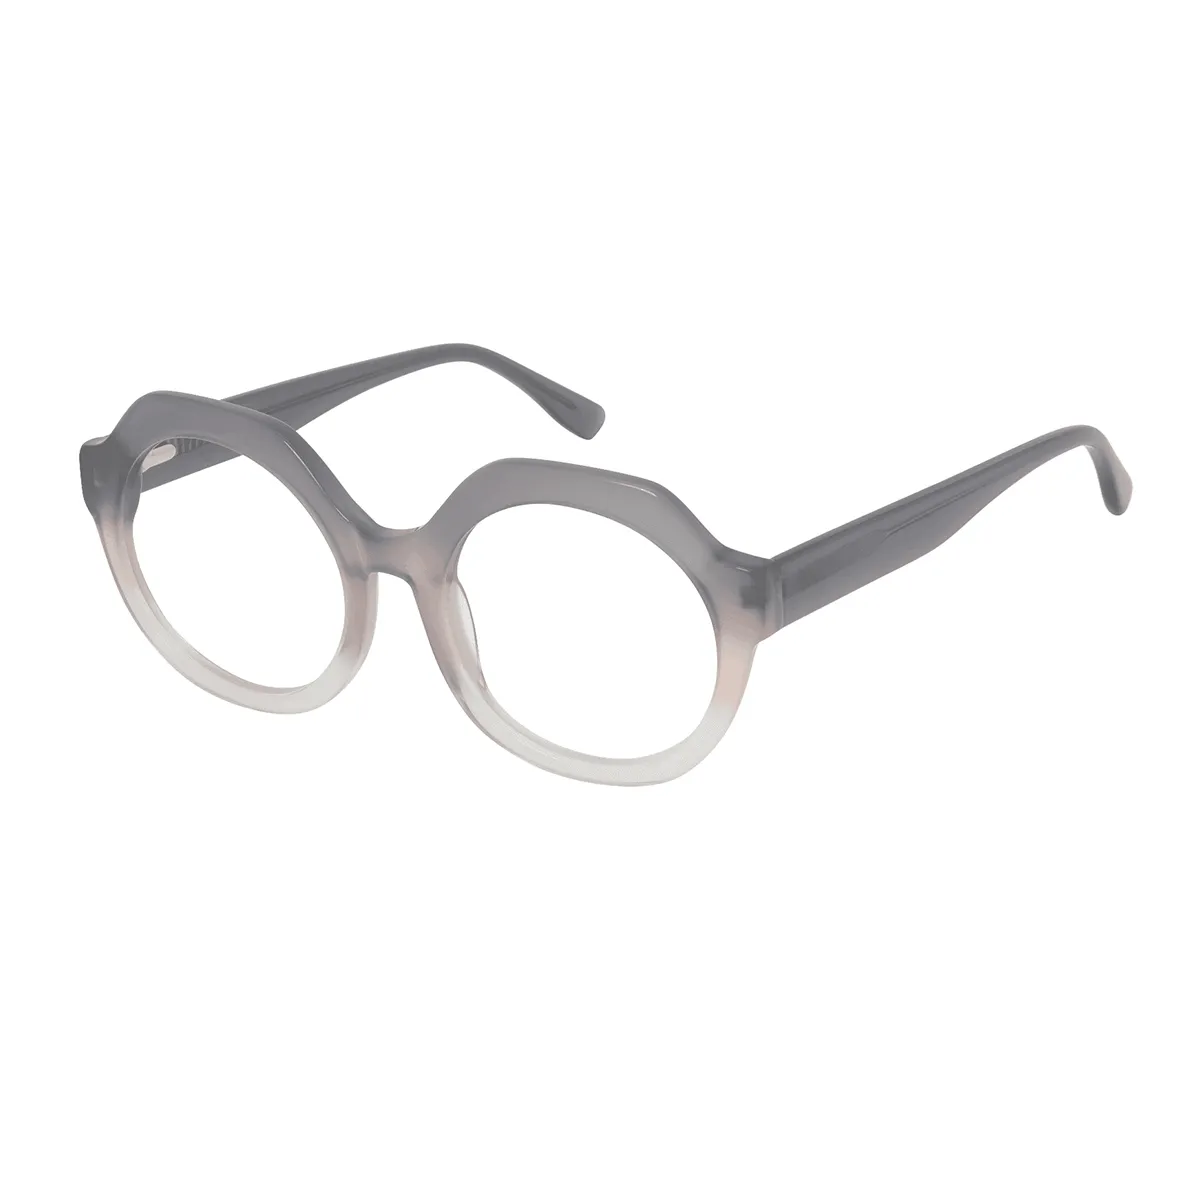 Ailie - Geometric Gray Glasses for Women